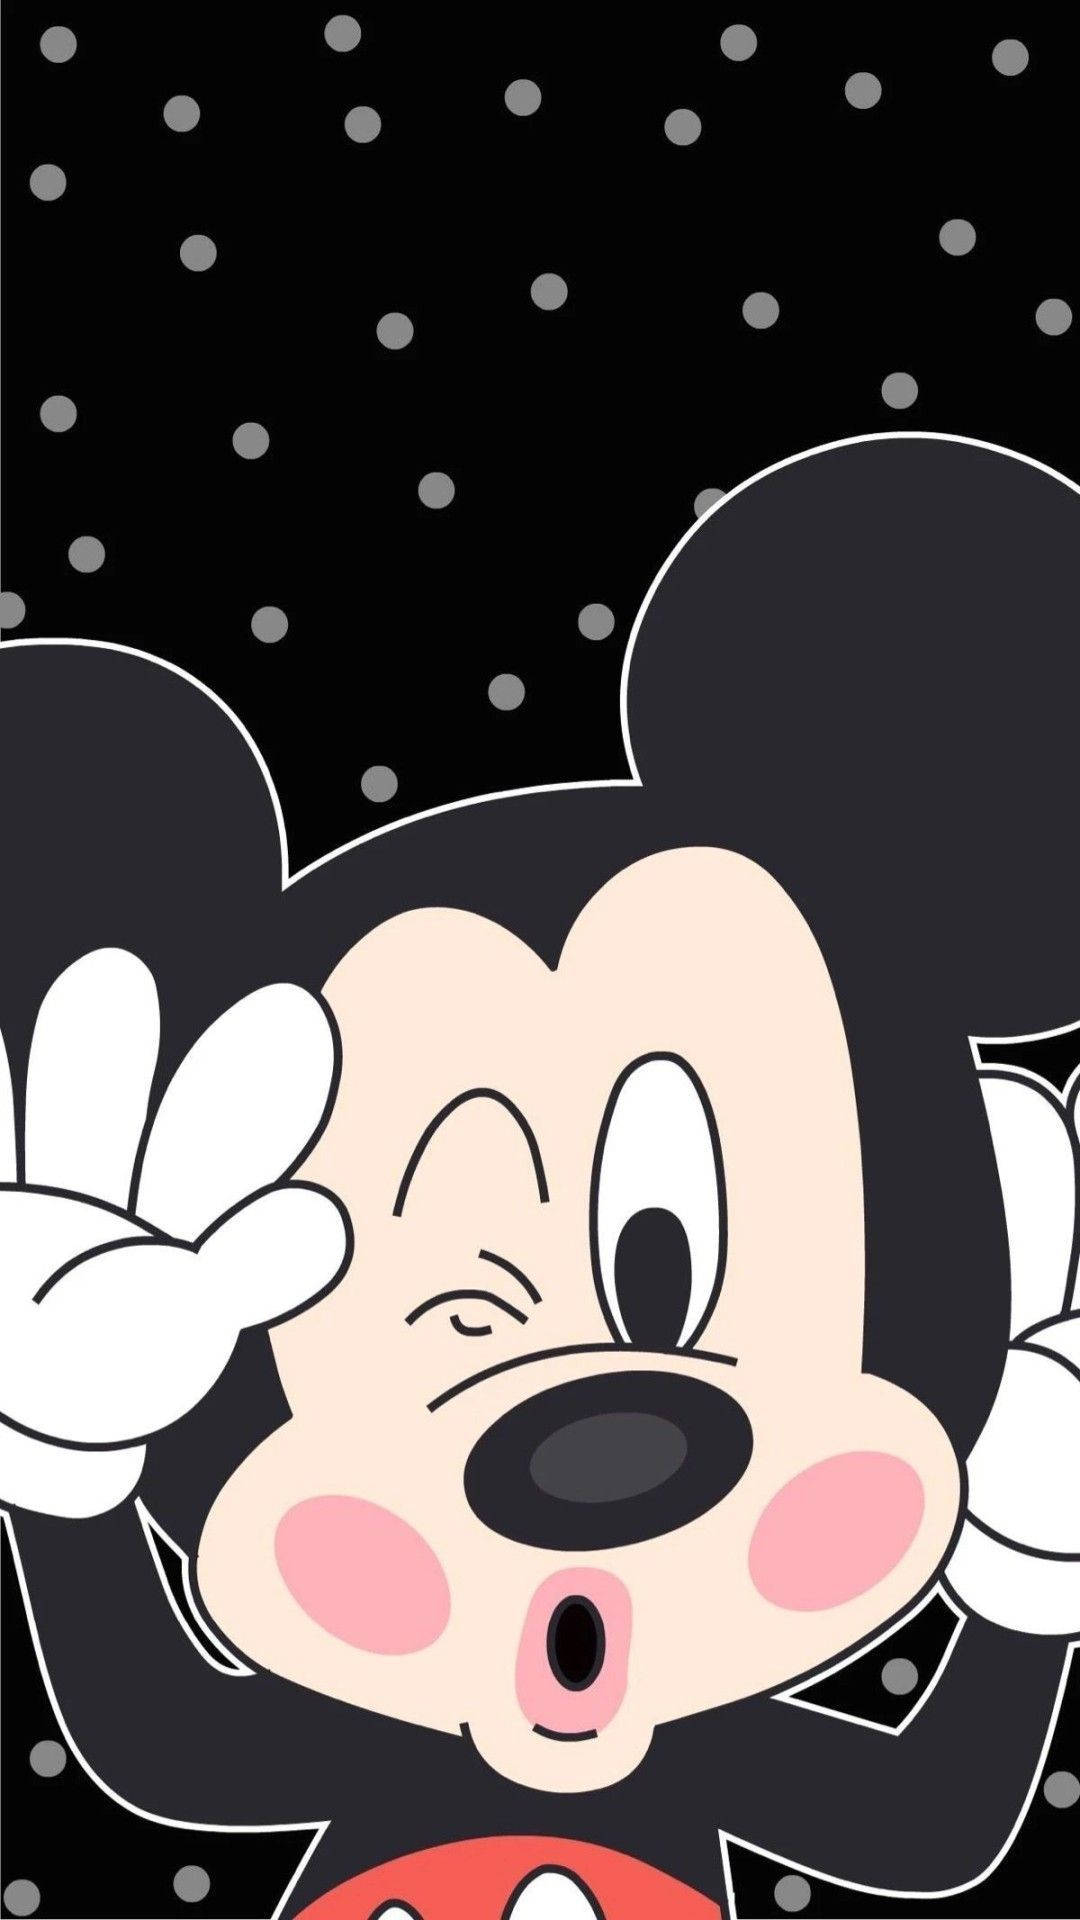 chuột mickey - Nhân vật hoạt hình Chuột Mickey mặc áo khoác nhiều màu, mỉm  cười png tải về - Miễn phí trong suốt Chuột Mickey png Tải về.